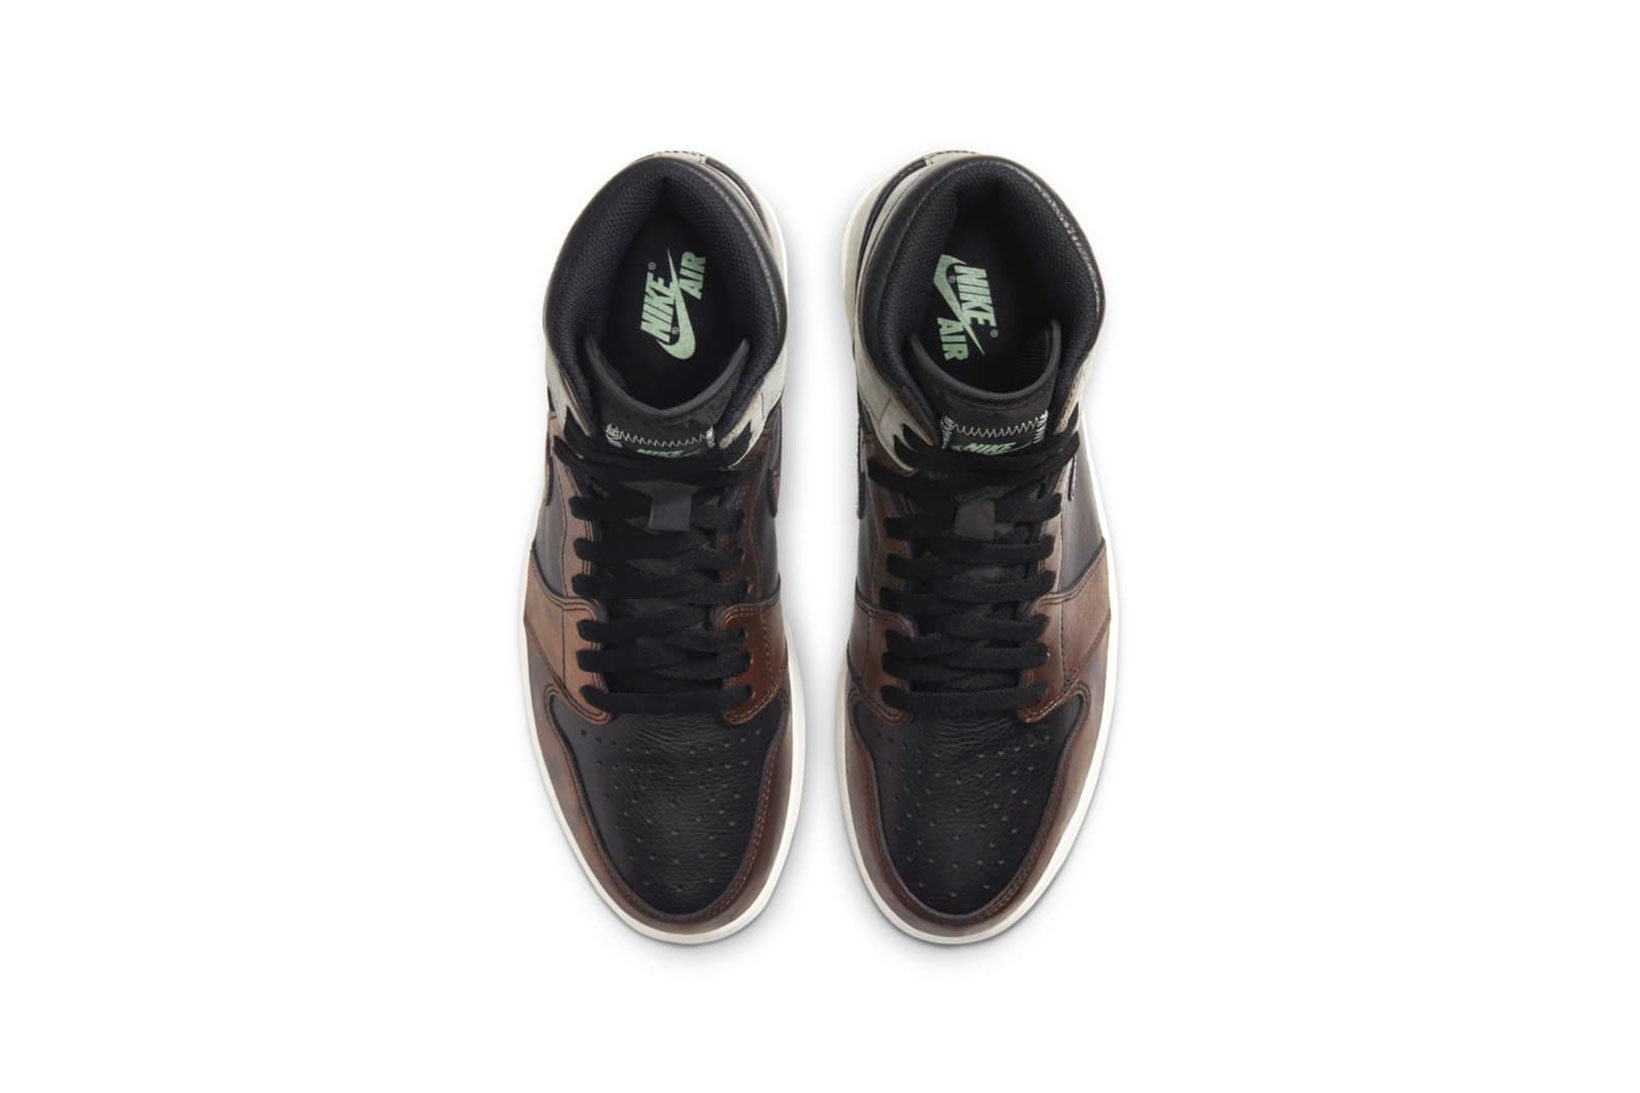 nike air jordan 1 aj1 sneakers rust shadow brown black colorway footwear shoes kicks sneakerhead top view insole